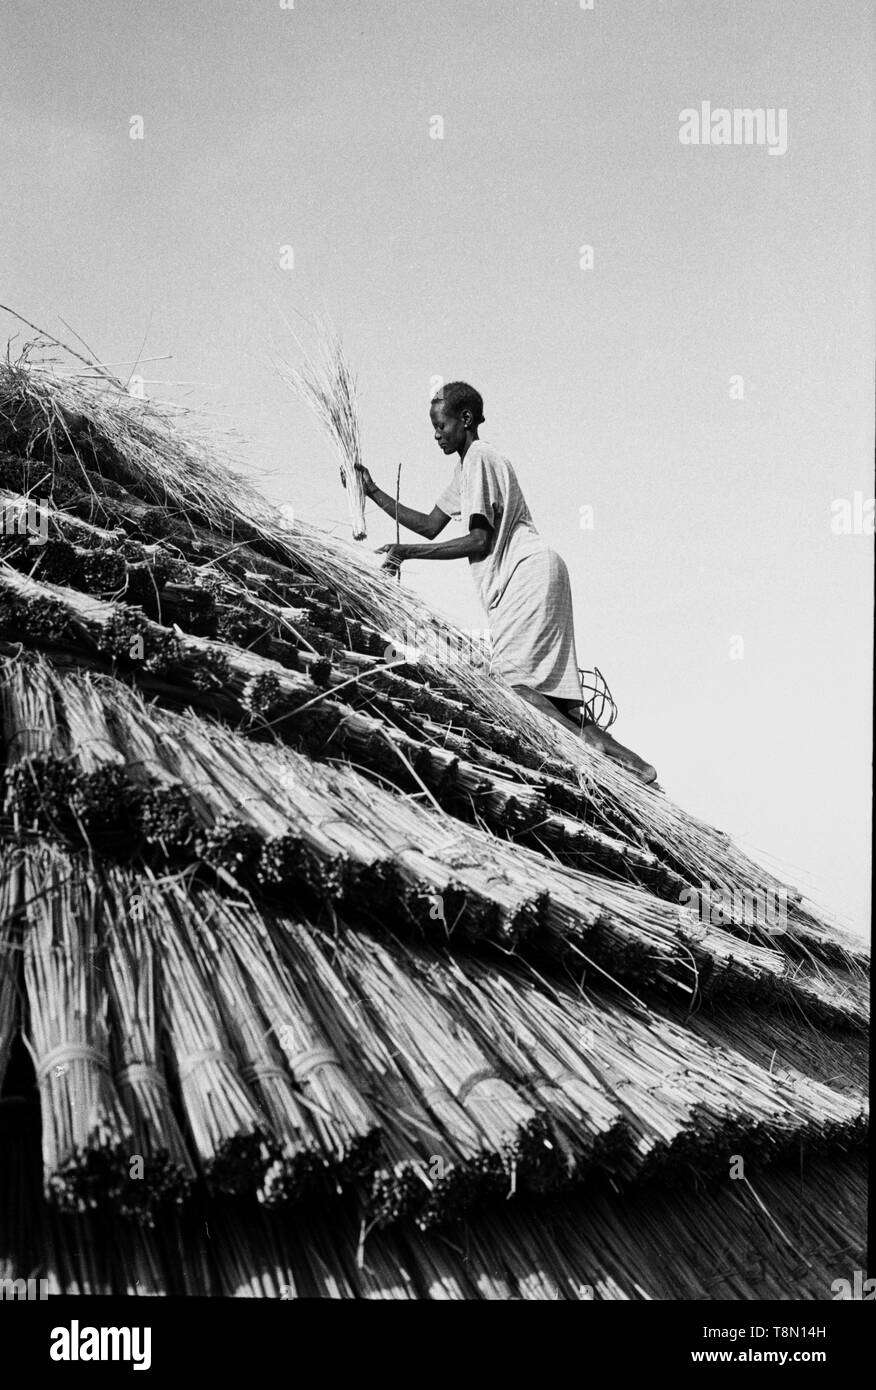 Dach zusammenbrechen von Frauen geleistet werden, um die Ringe der Bergrücken sind Benutzerdefiniert, um den Stamm der Dinka. Stockfoto